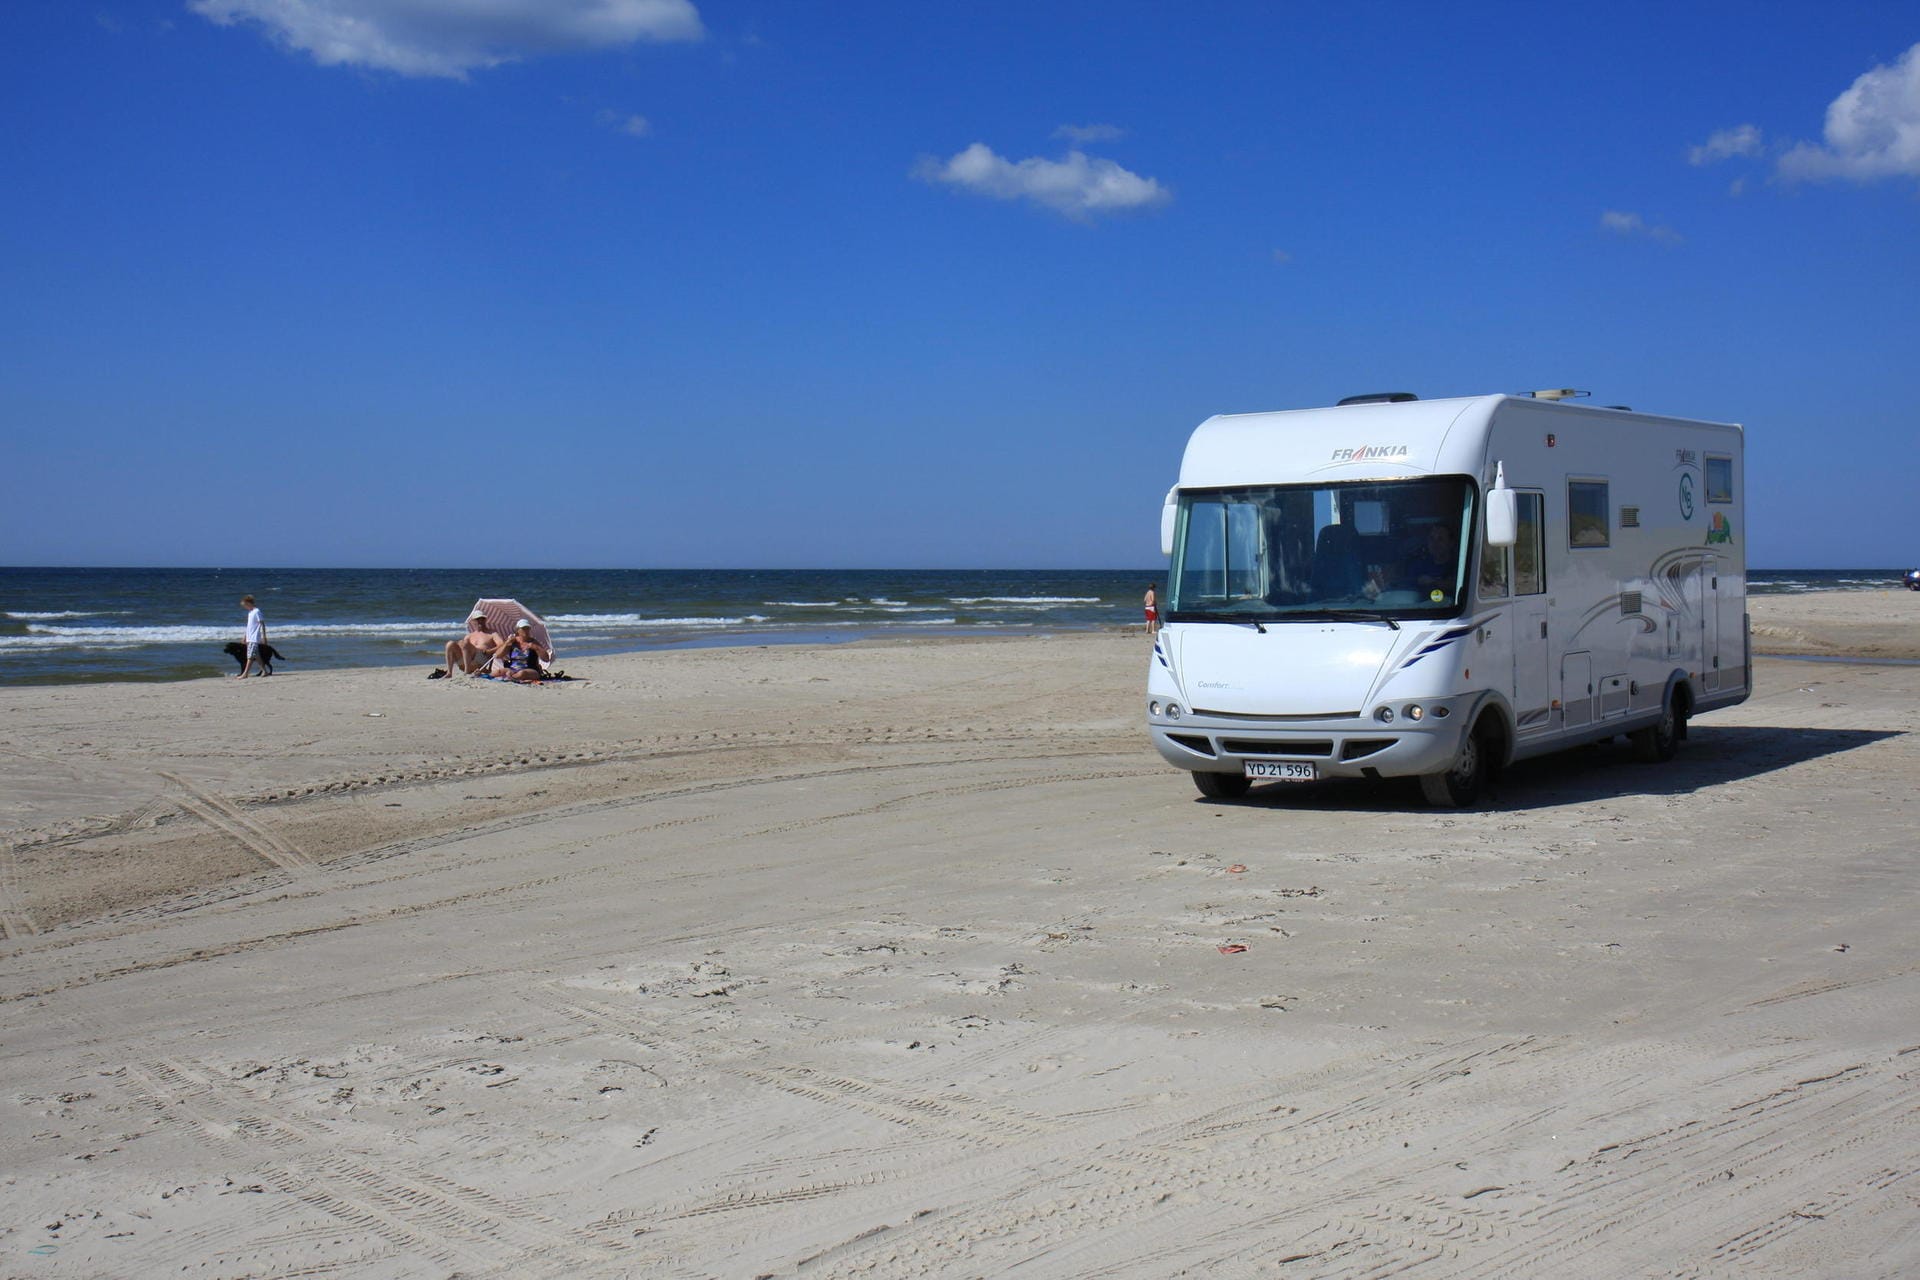 Campingwagen am dänischen Strand: Jütlands Westküste ist bei Campern äußerst beliebt.